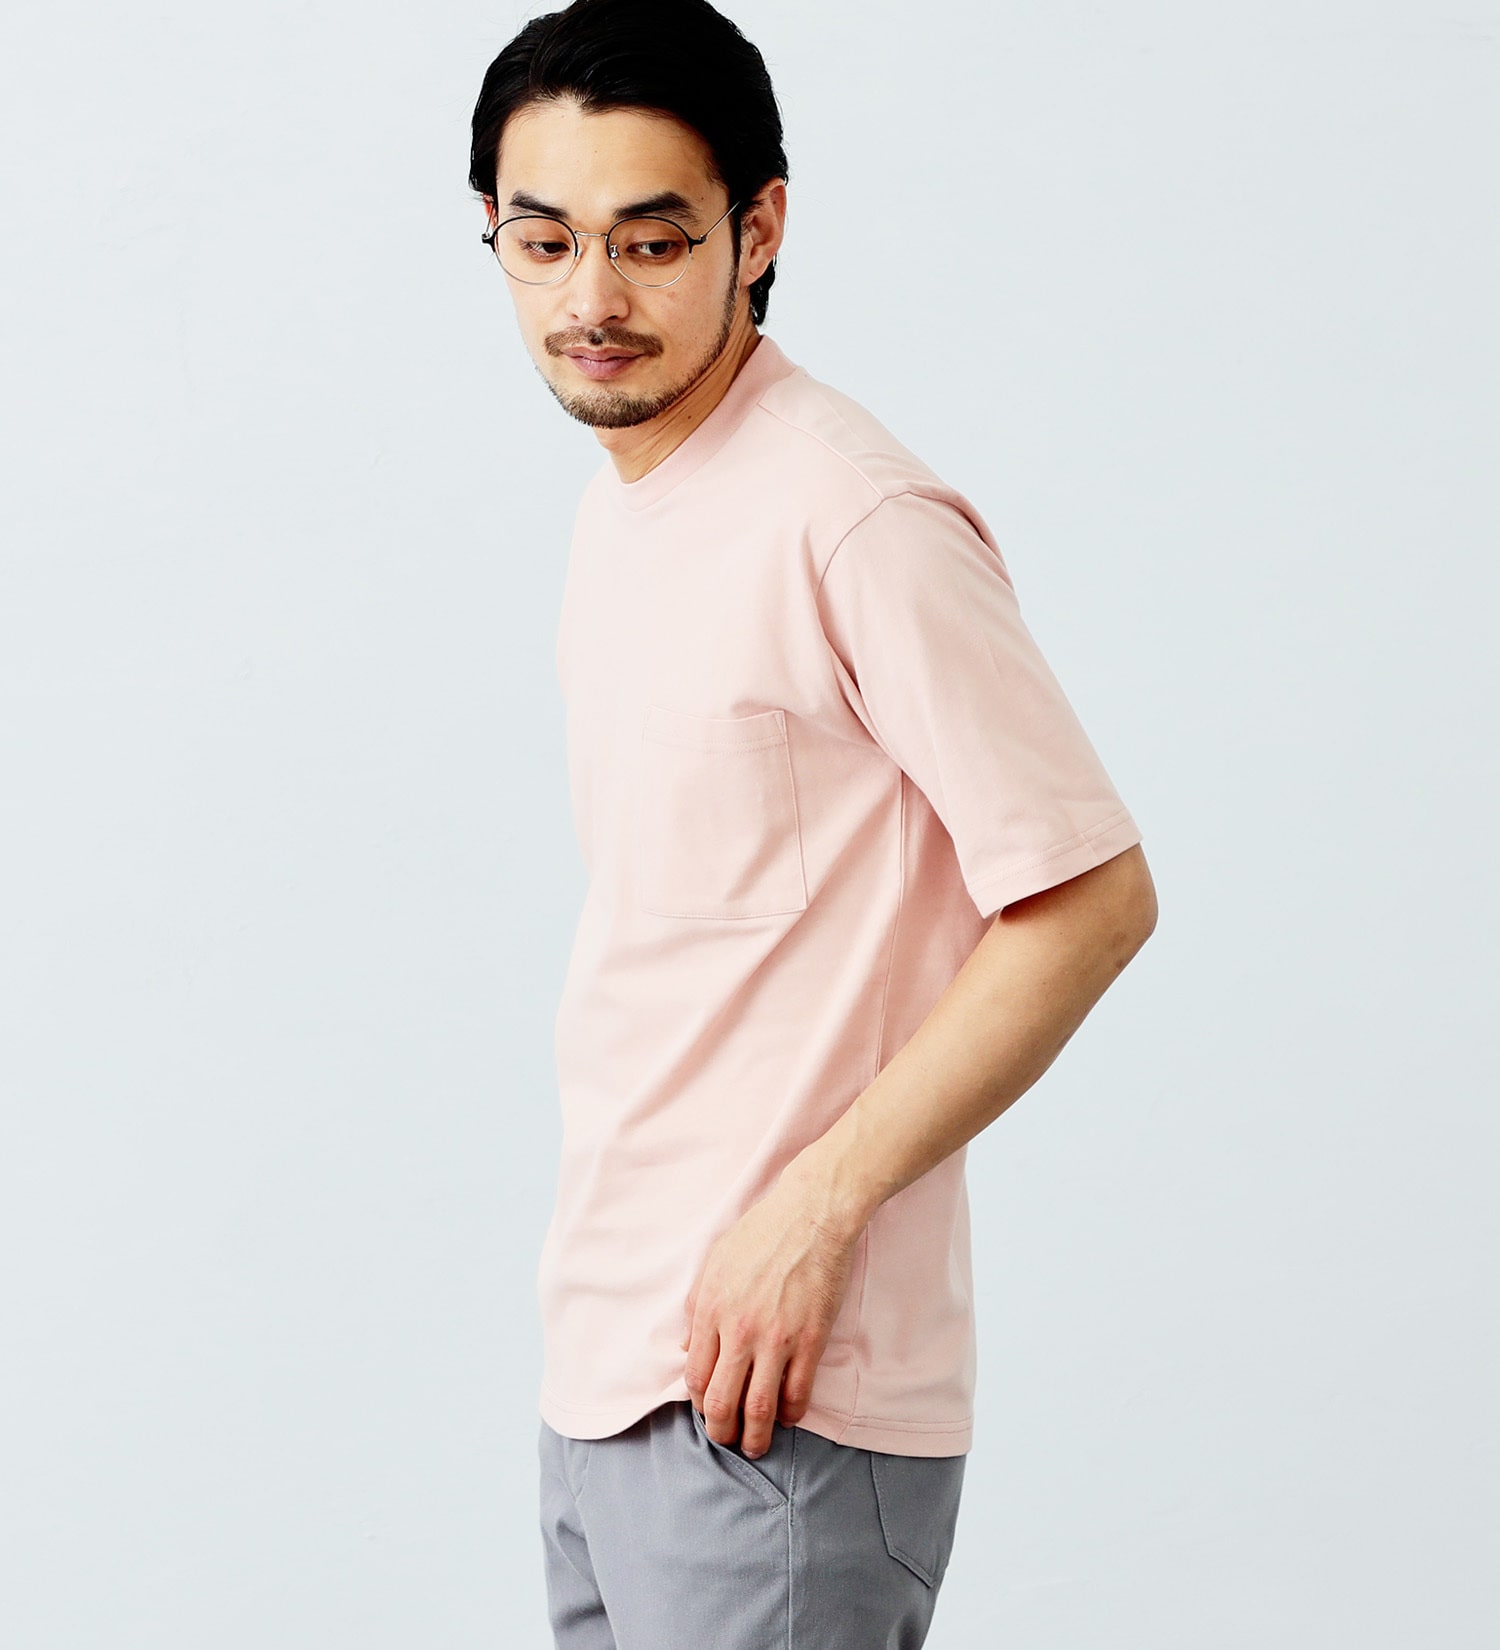 EDWIN(エドウイン)のデニスラAIR クルーネックポケットTシャツ 半袖|トップス/Tシャツ/カットソー/メンズ|サーモンピンク